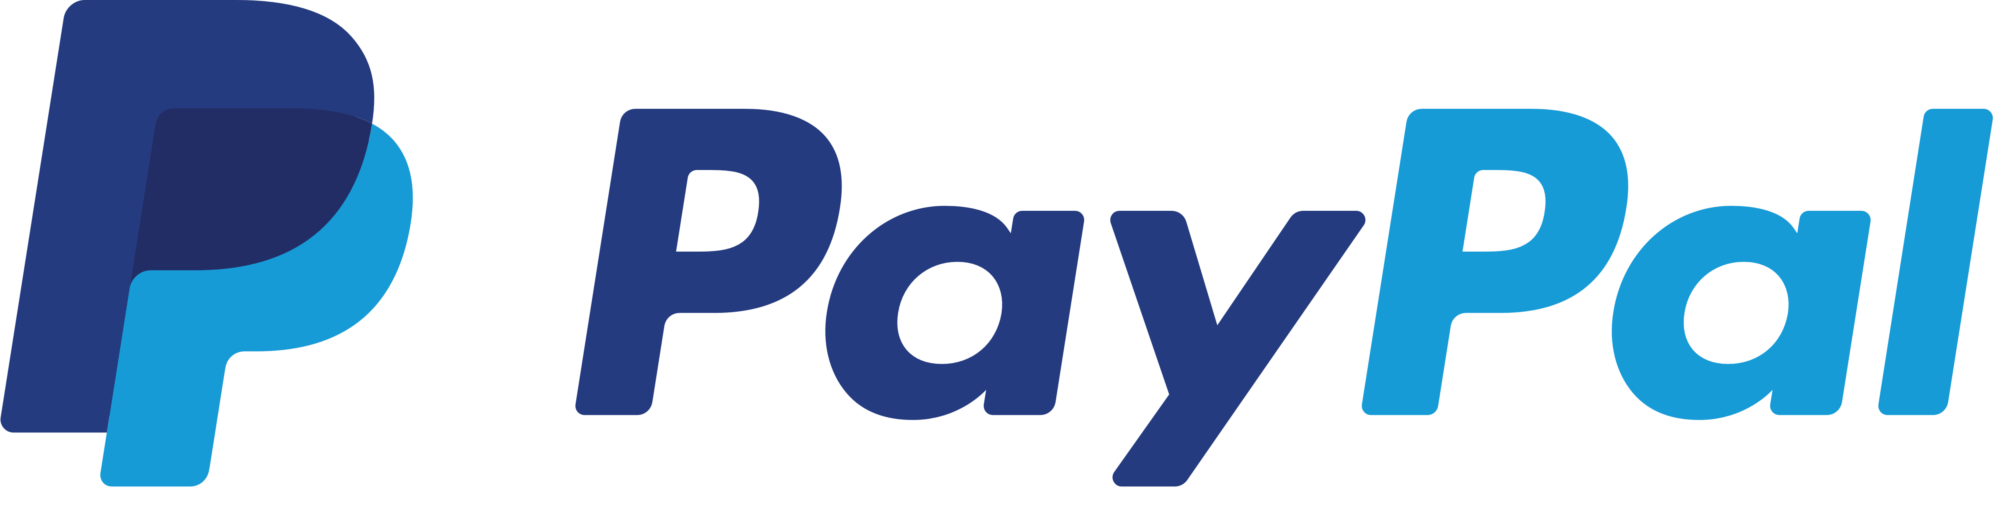 PayPal_logo_logotype_emblem